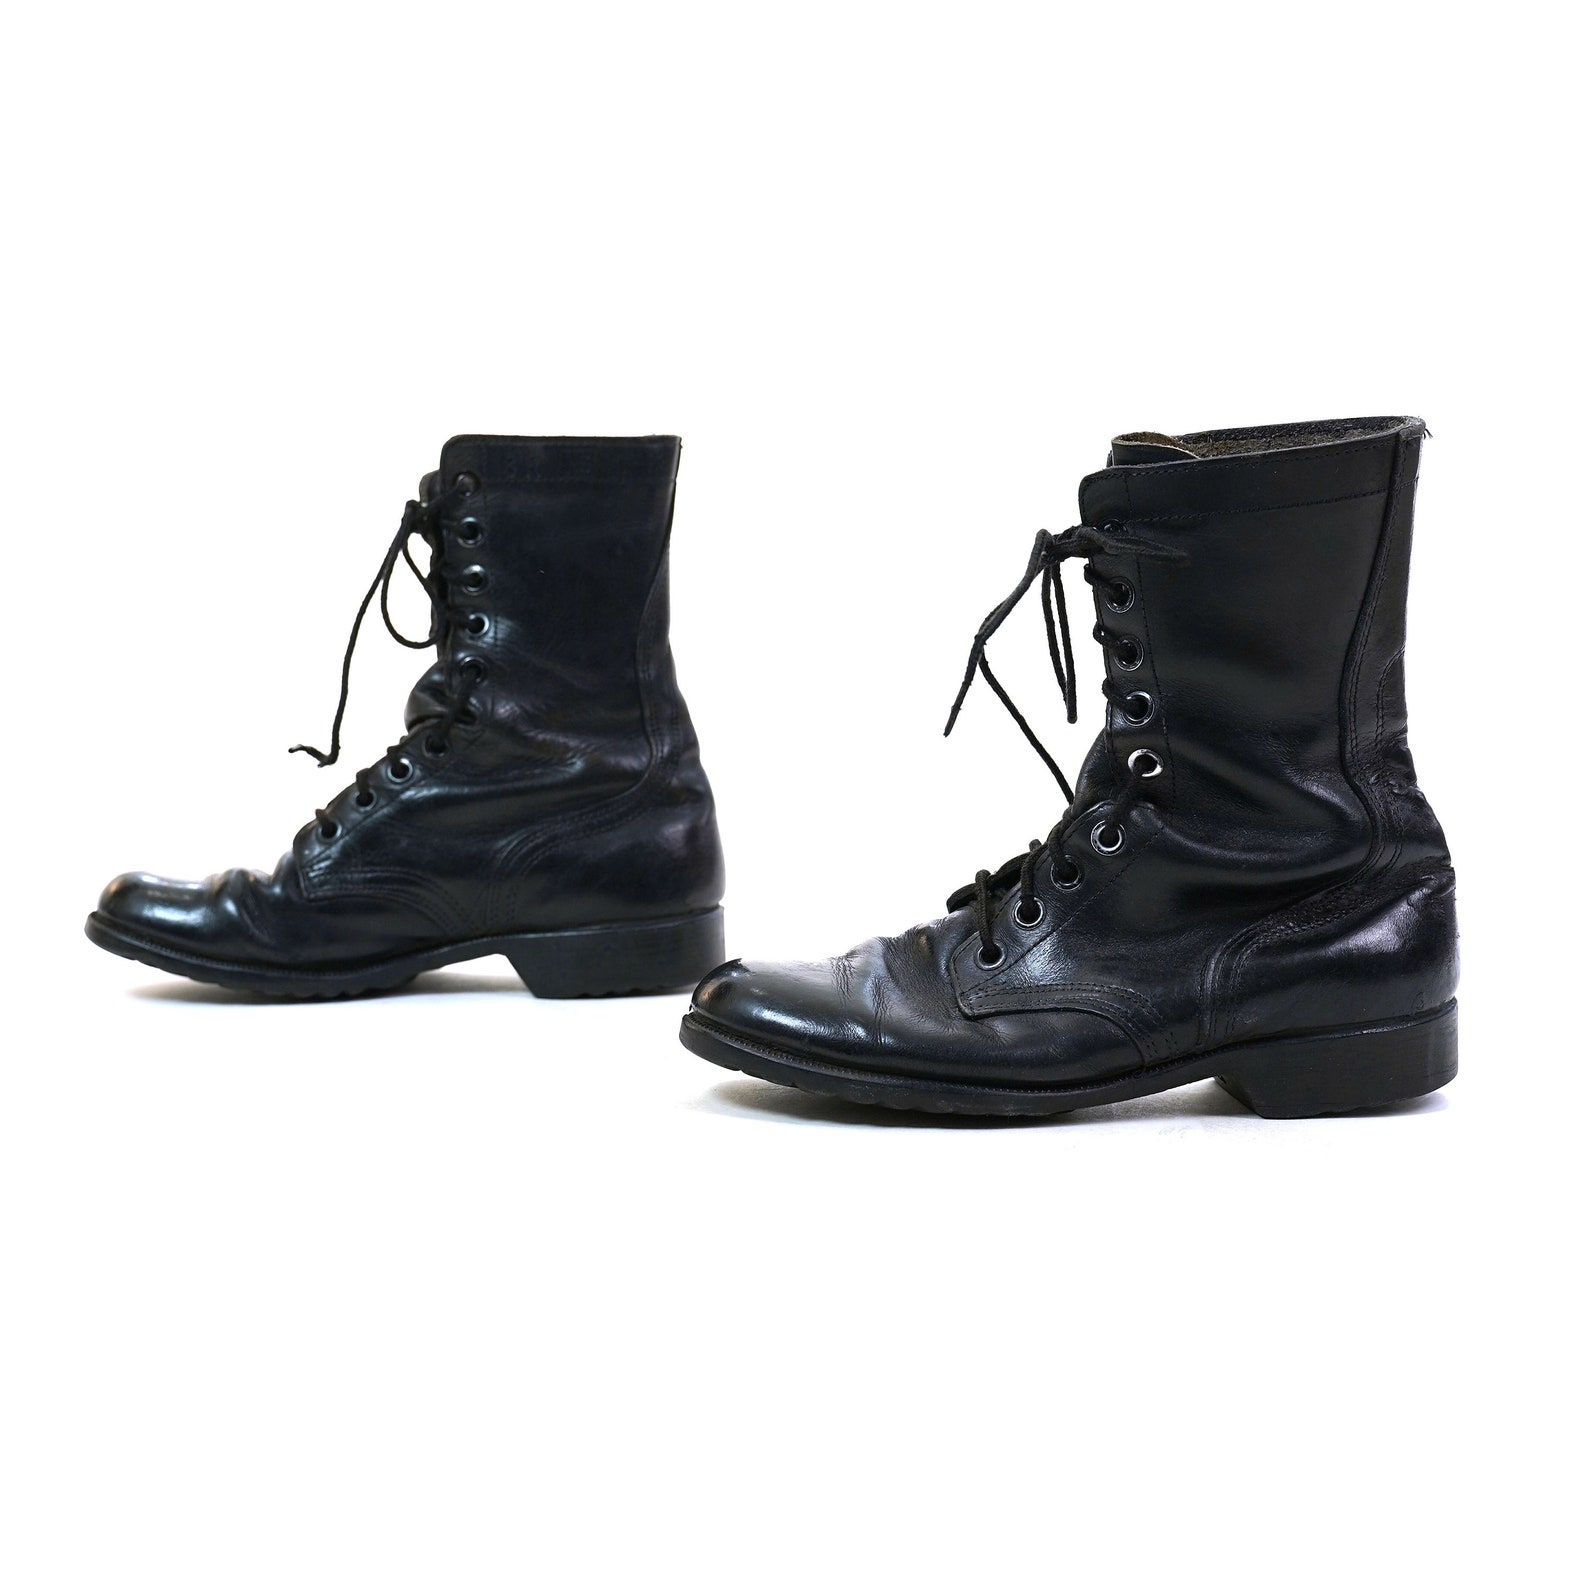 Black Leather Combat Boots Women's Size 9.5 Vintage 80s | Etsy